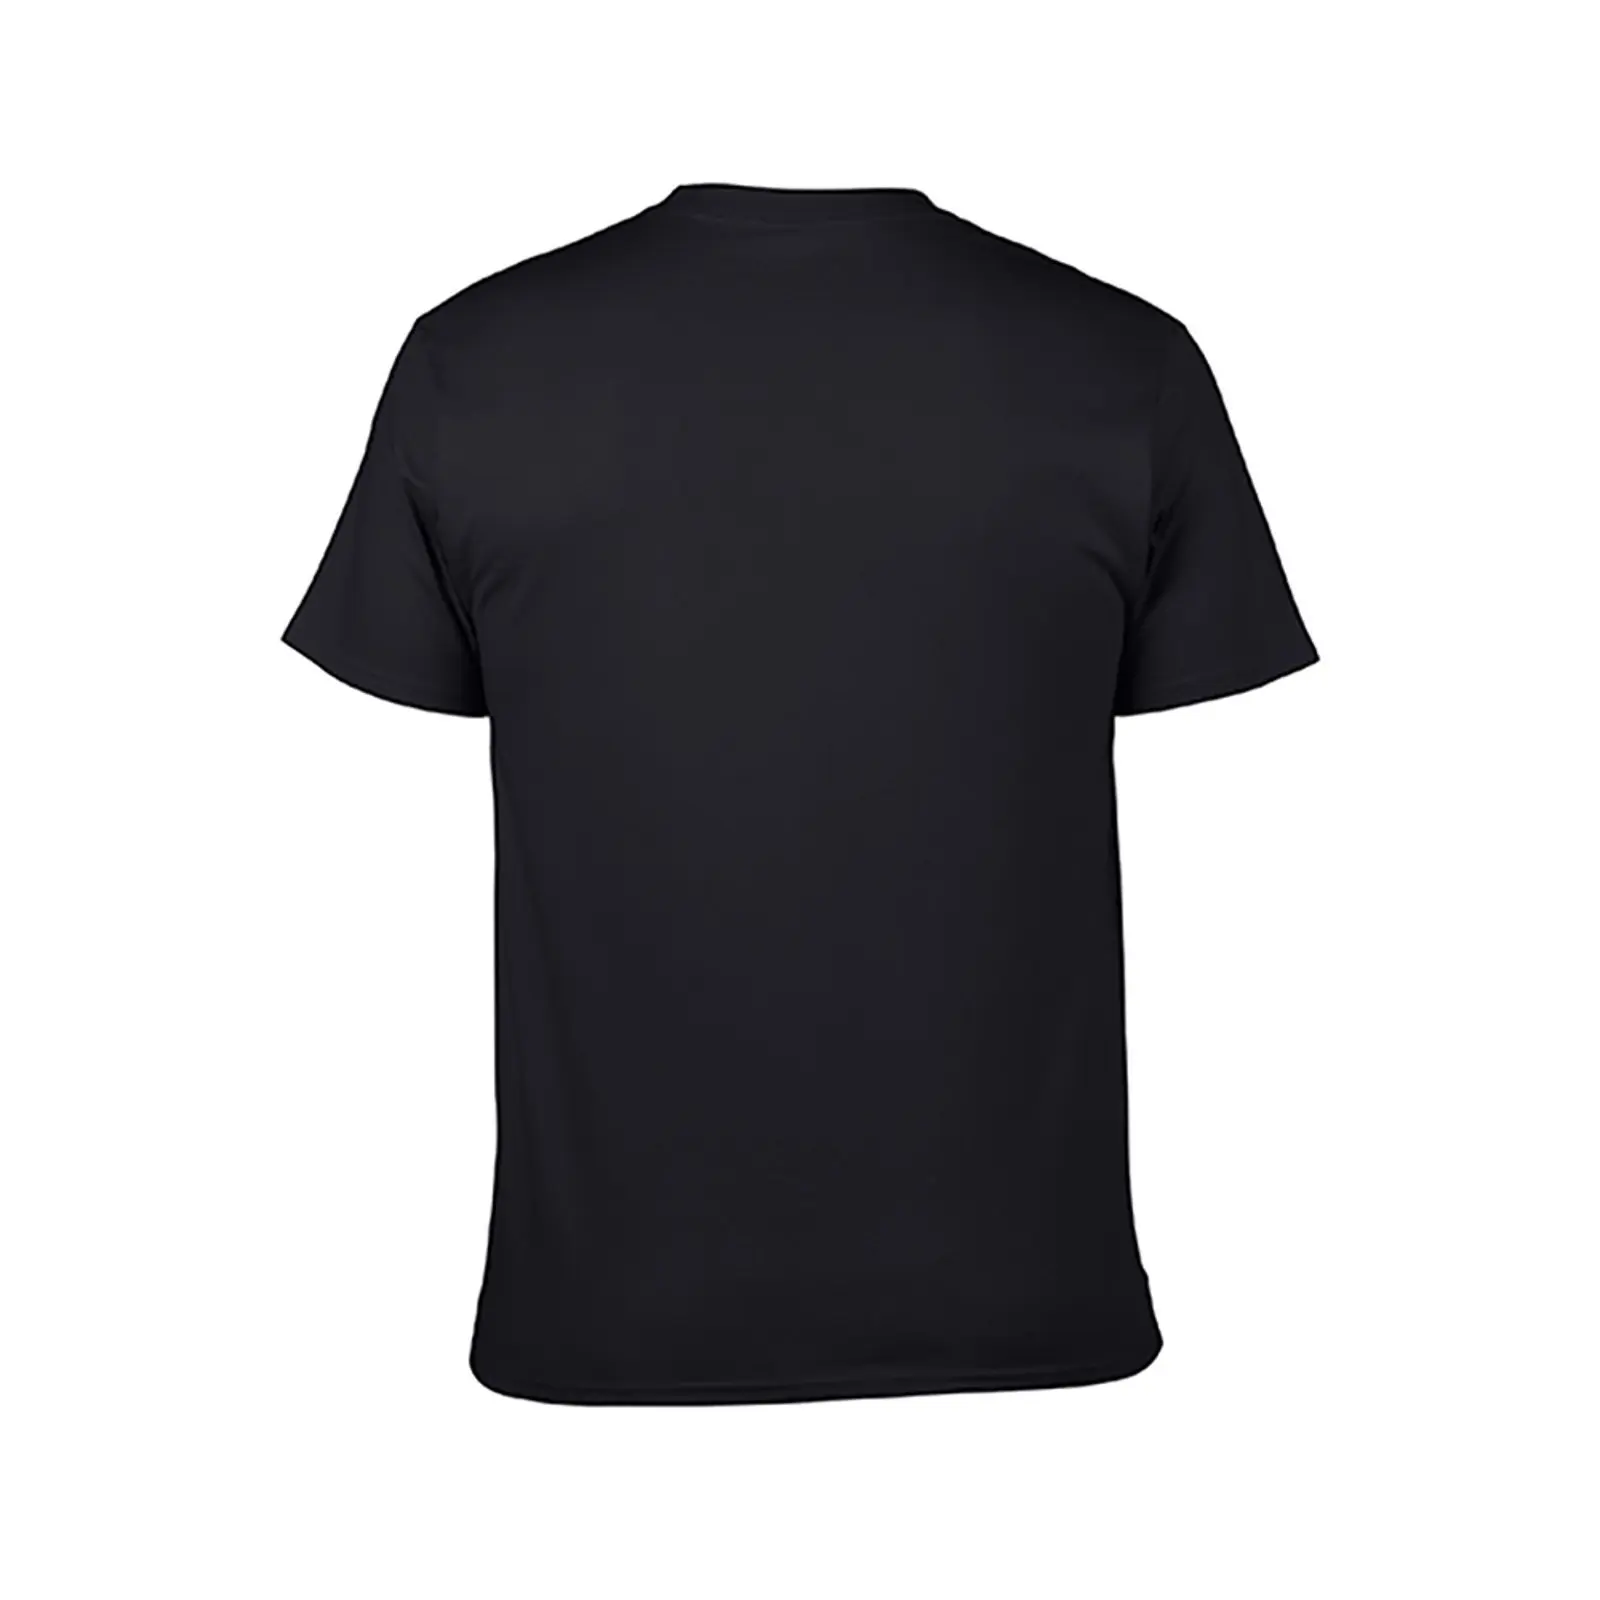 O Escolhido Merch Obter Usado para Diferentes T-Shirt de verão tops plus size tops simples t-shirt dos homens de treino camisa